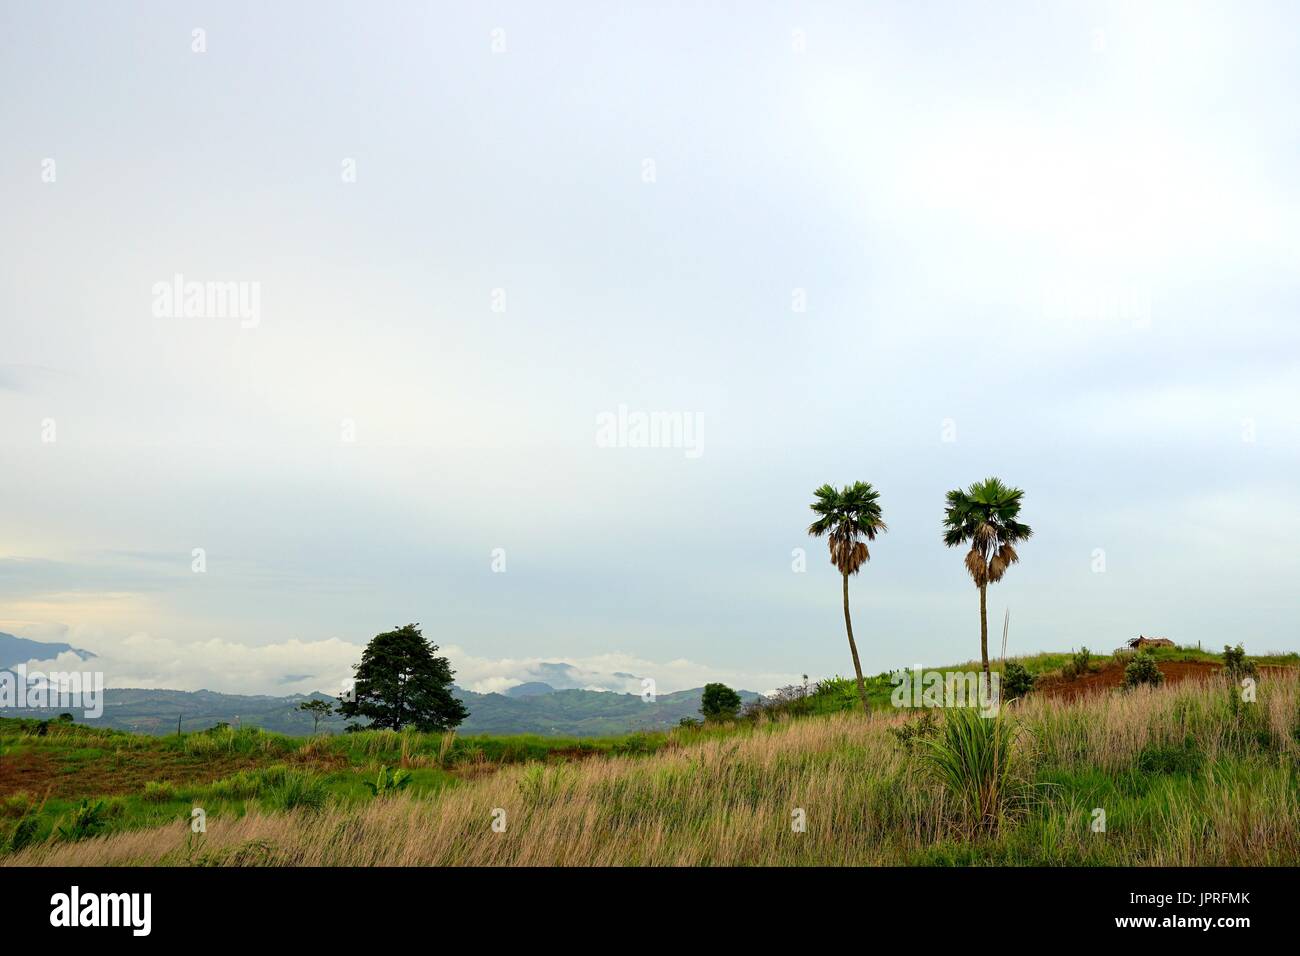 Paysage de deux palmiers à sucre et de chalet en bois dans le pré sur la colline avec ciel nuageux, Khao Kho, province de Phetchabun, Thaïlande Banque D'Images